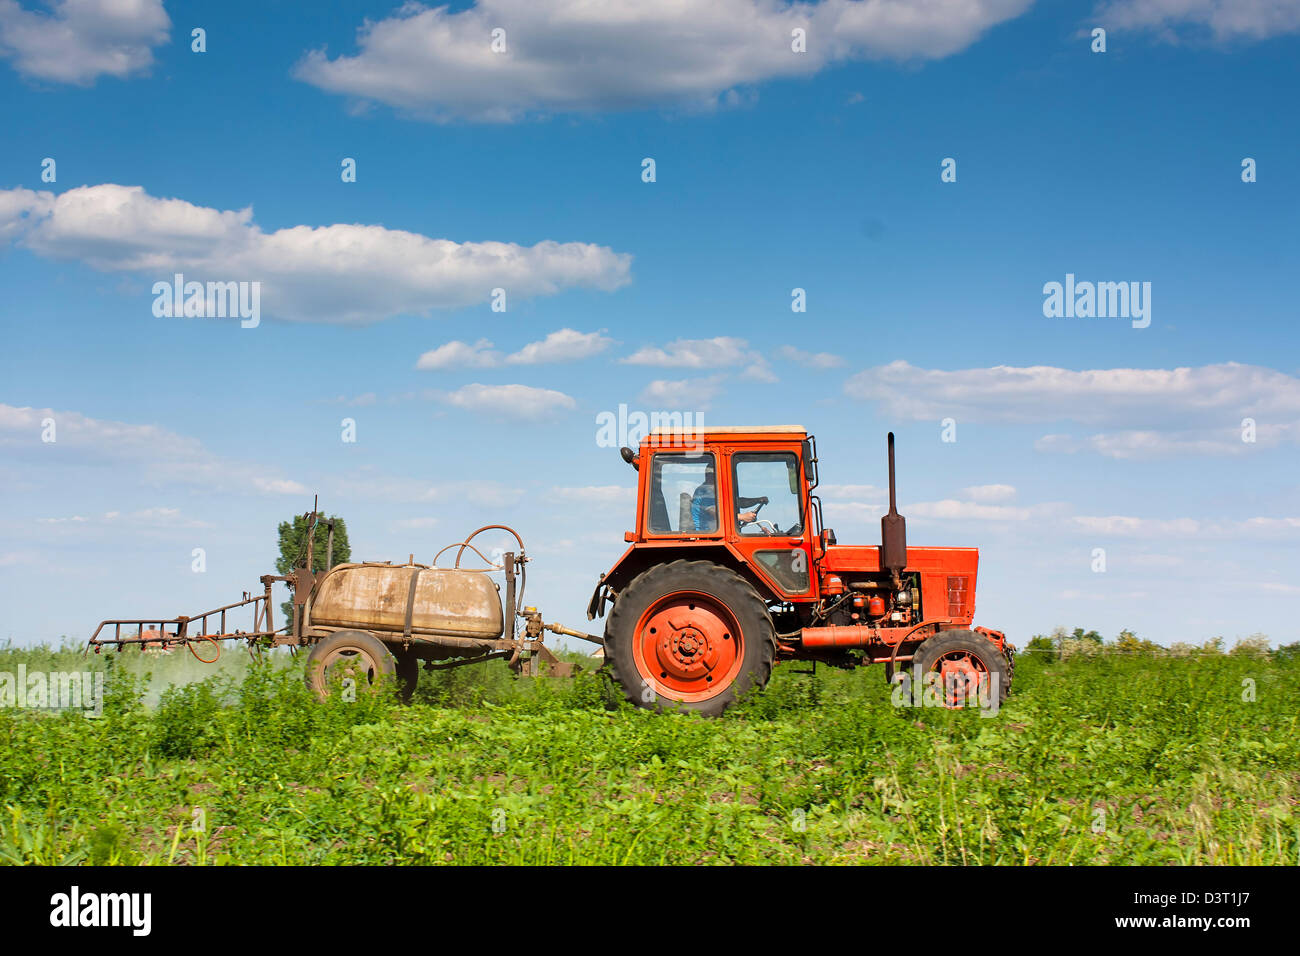 Le traitement chimique des cultures du tracteur avec spray Banque D'Images